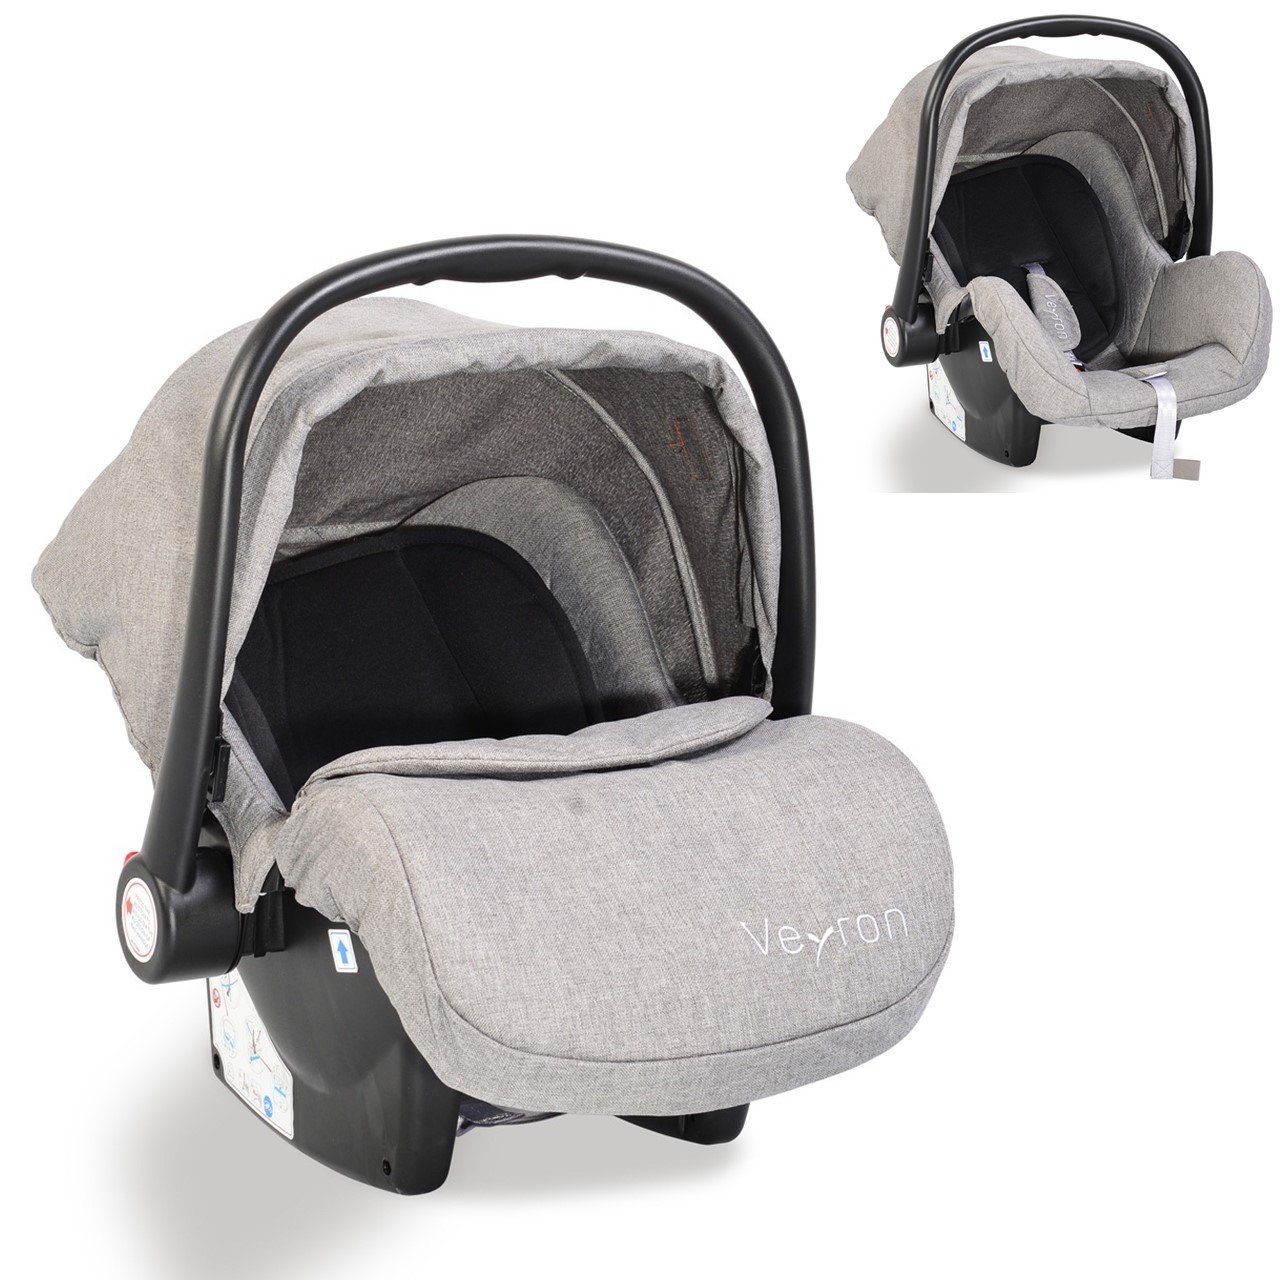 kg) Babyschale Kindersitz, bis: kg, Moni Veyron hellgrau 0+, Sonnendach, Adapter Gruppe -13 13 (0 Babyschale